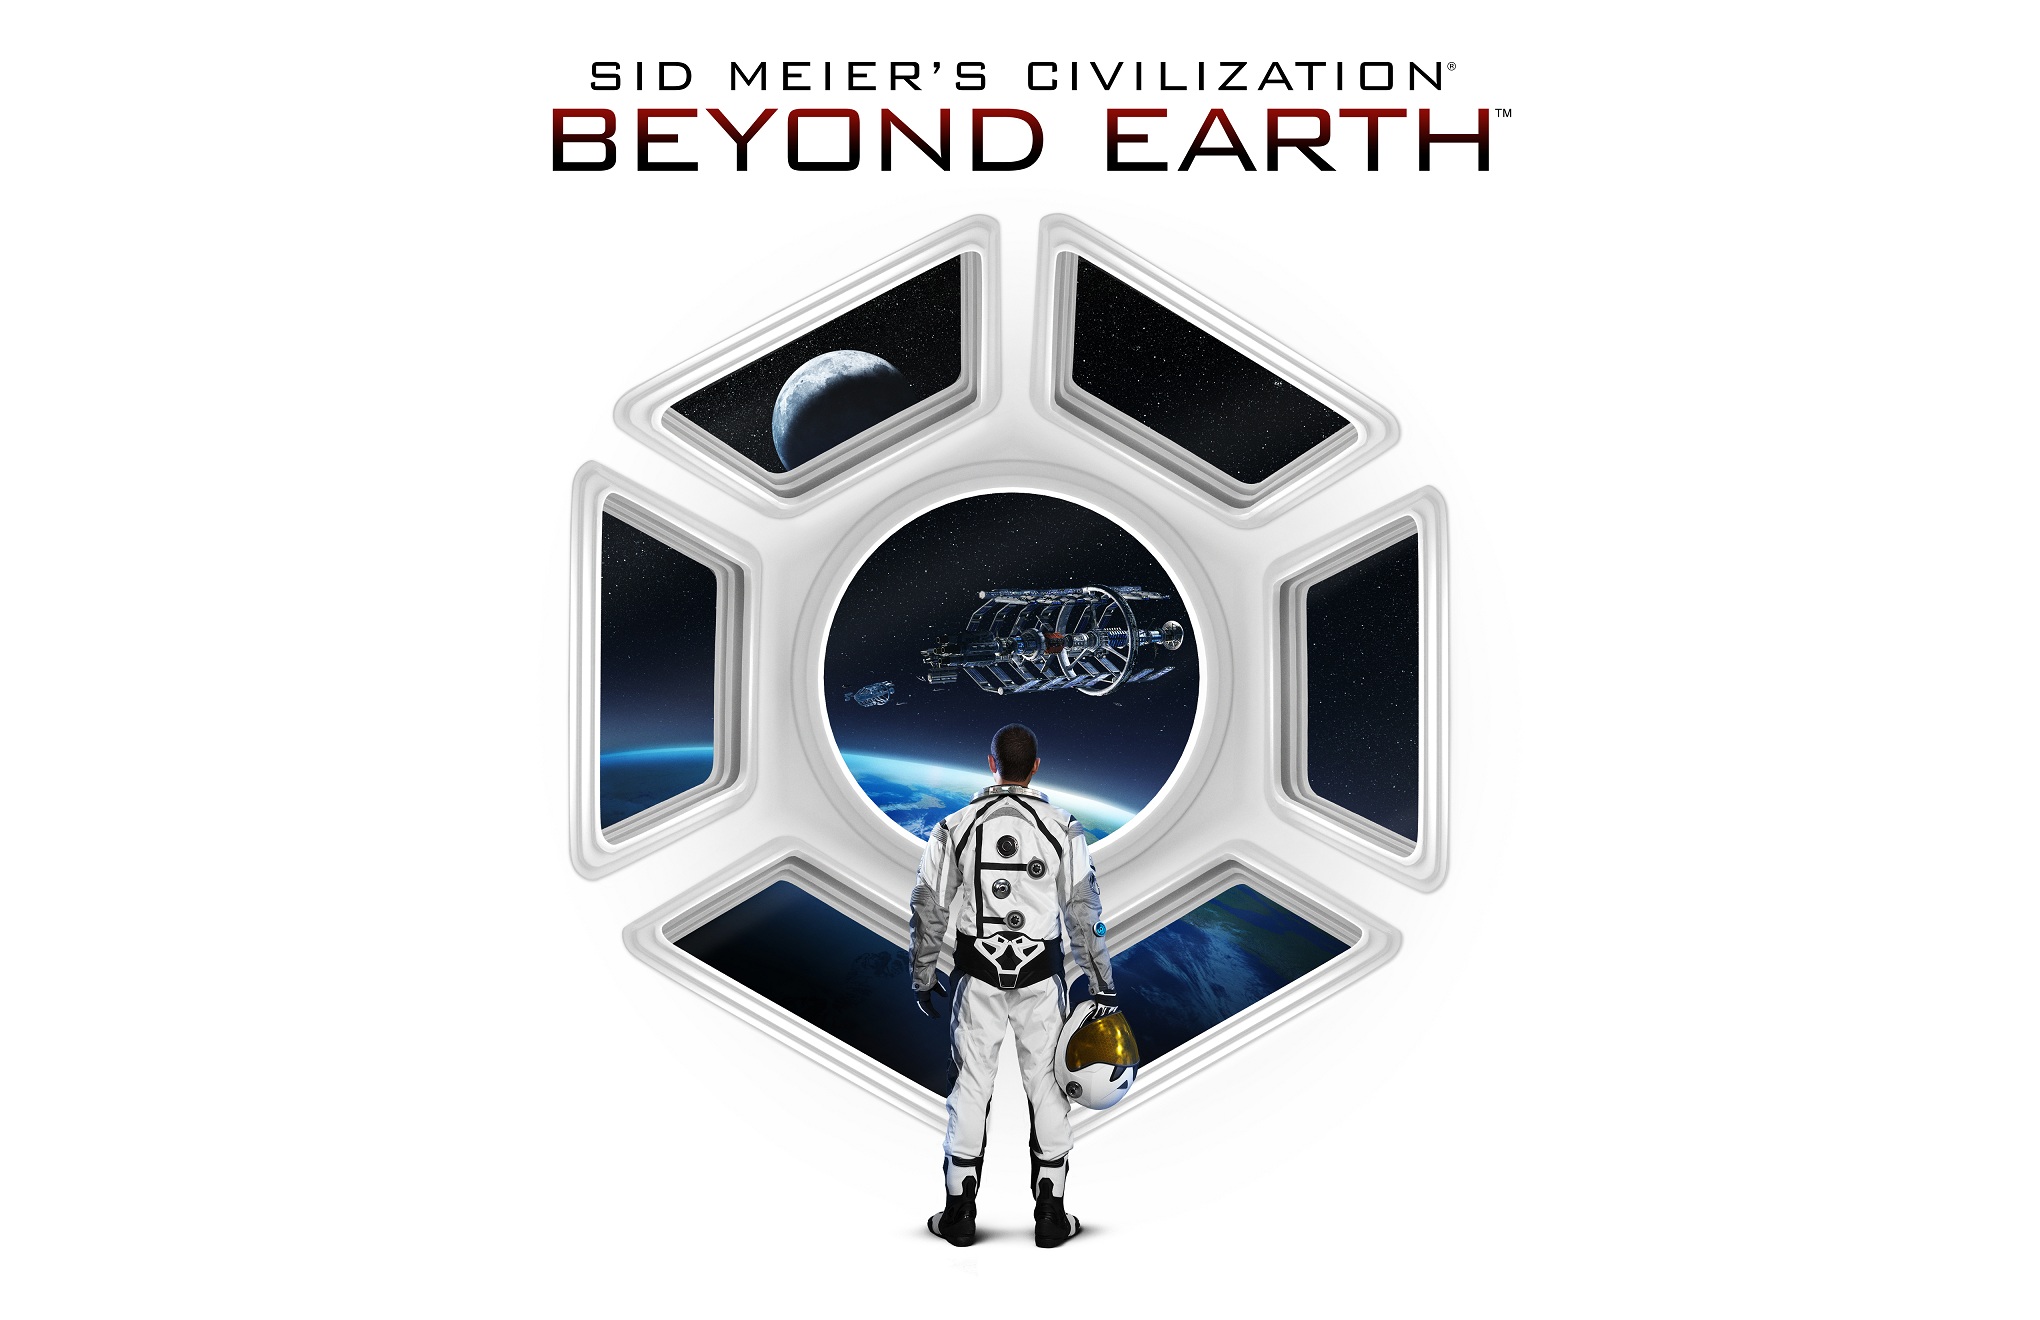 beyond earth